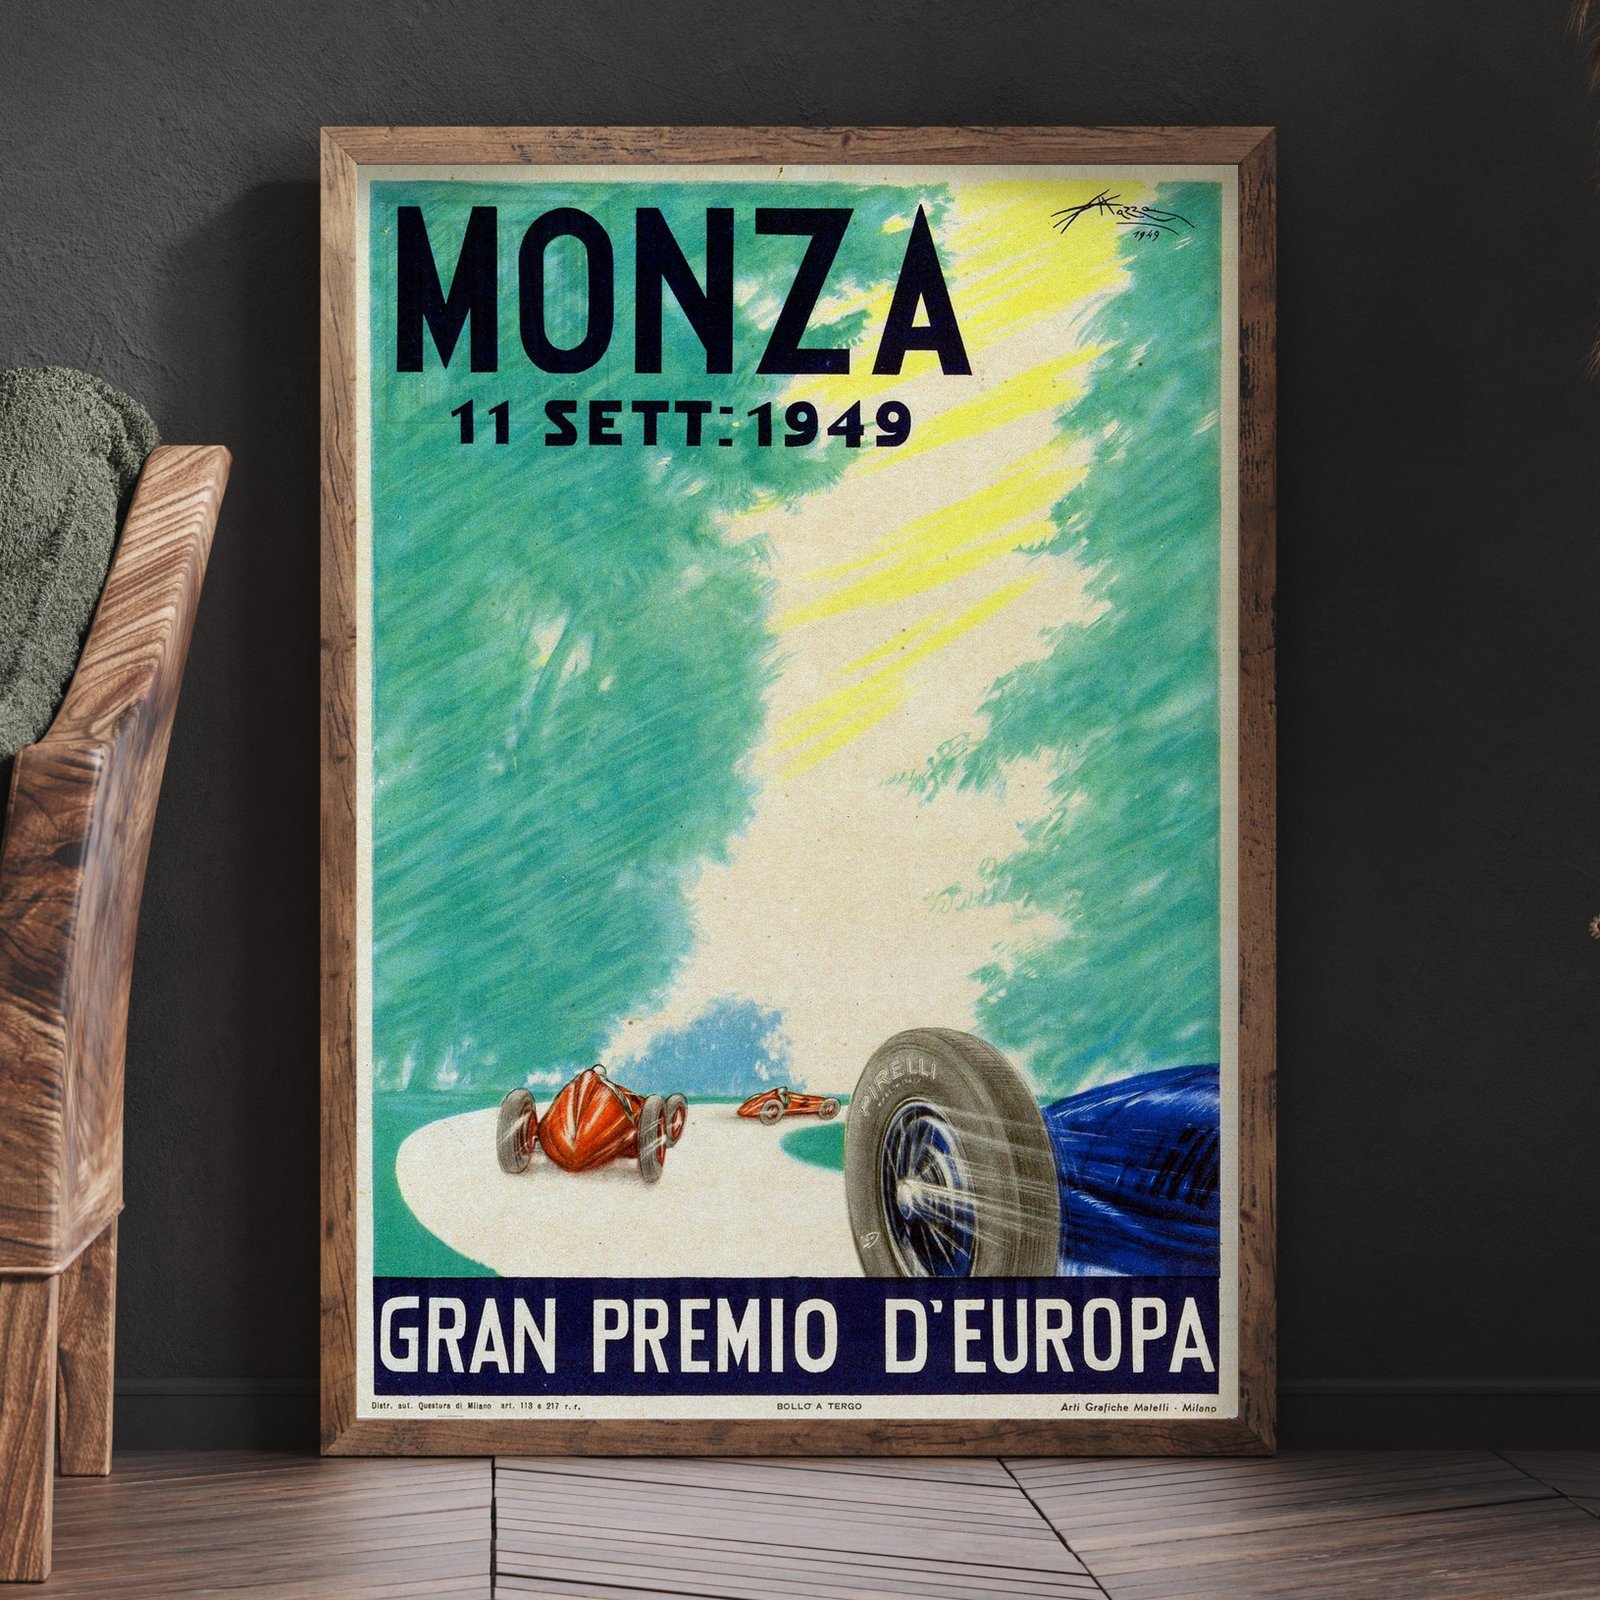 Gran Premio d'Europa, Monza | Aldo Mazza | 1949 | Vintage Poster 